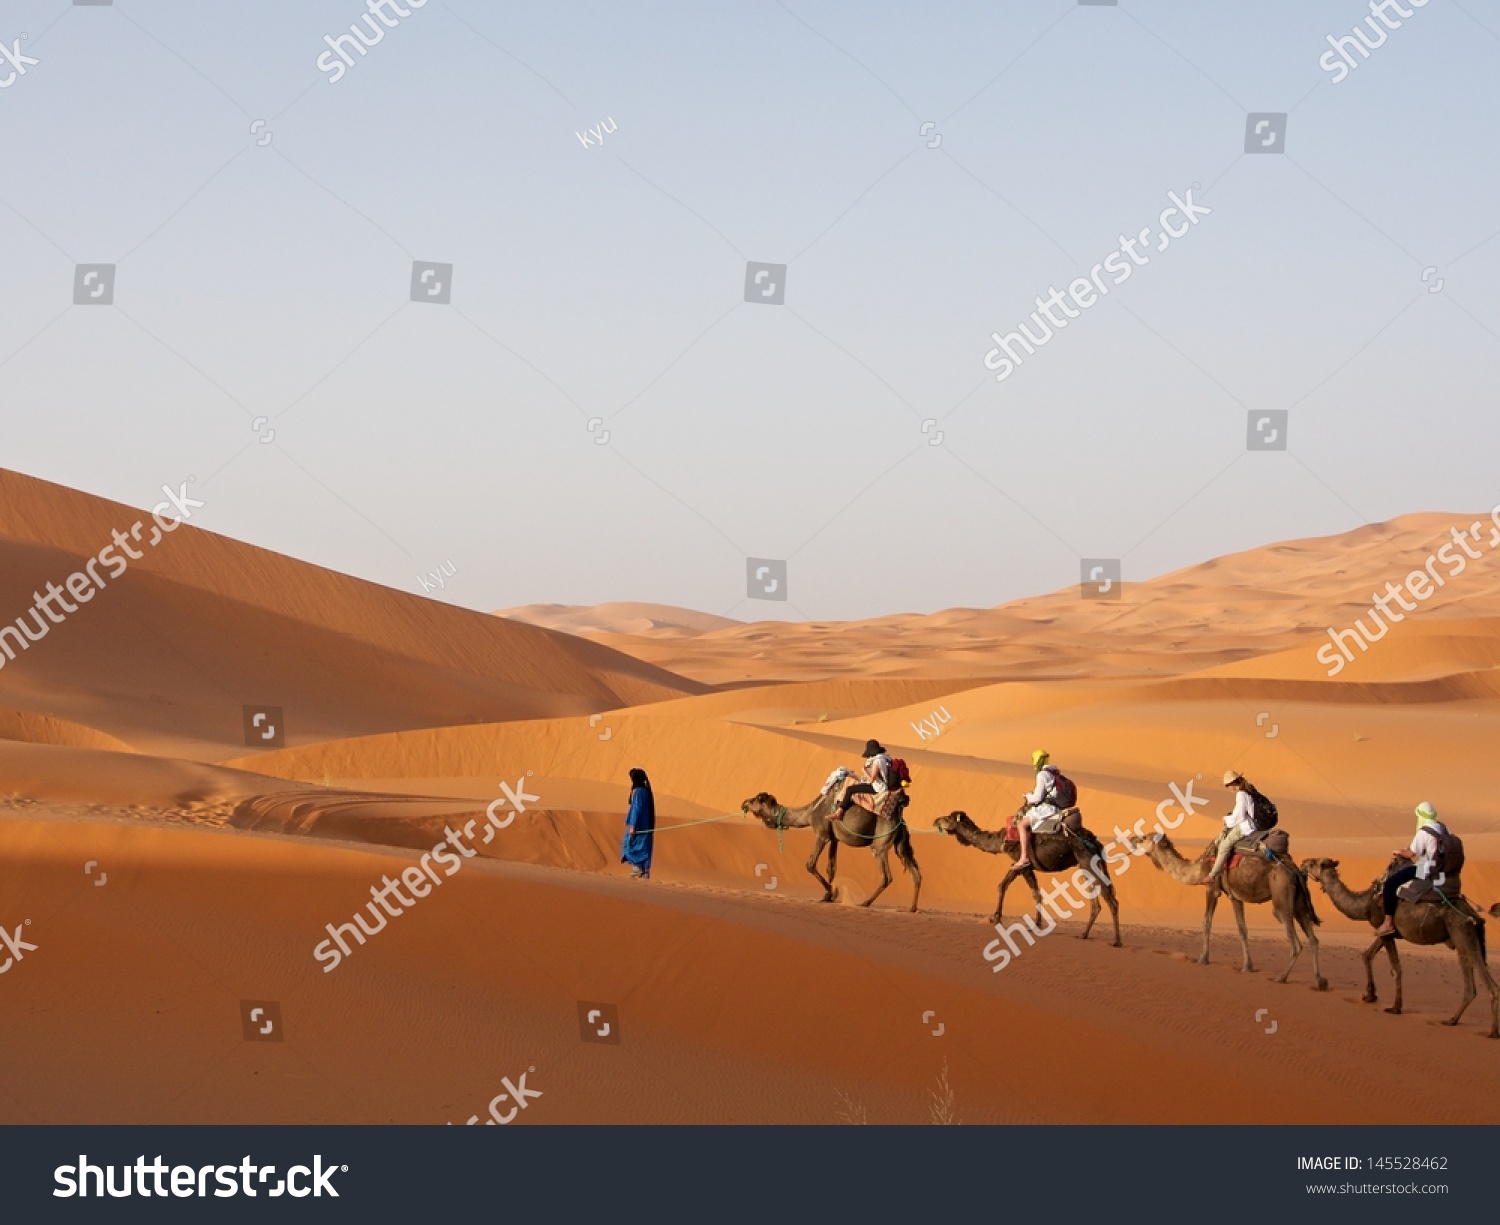 Sahara Desert Stock Photo 145528462 - Shutterstock